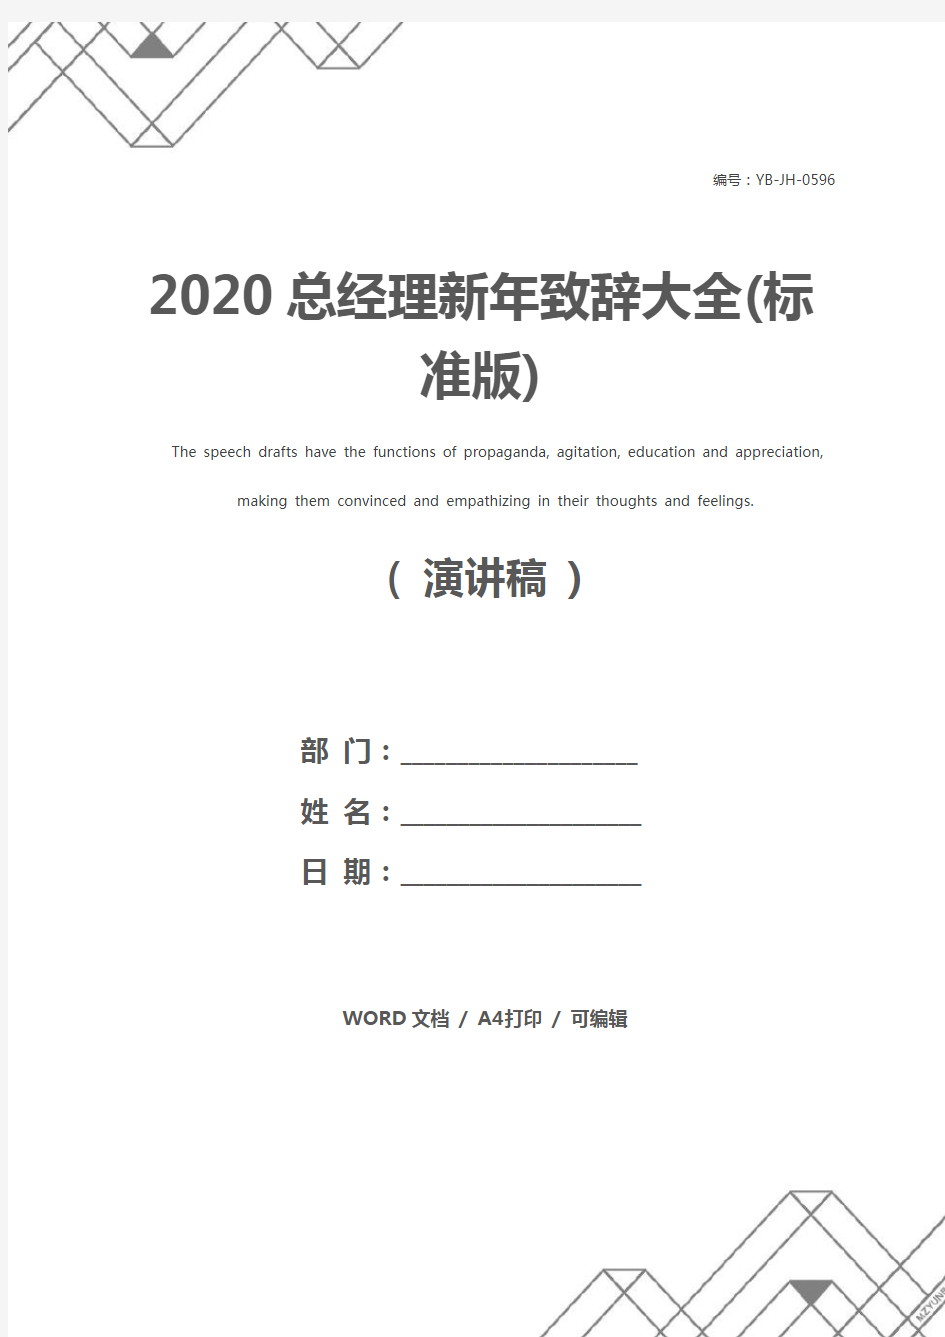 2020总经理新年致辞大全(标准版)